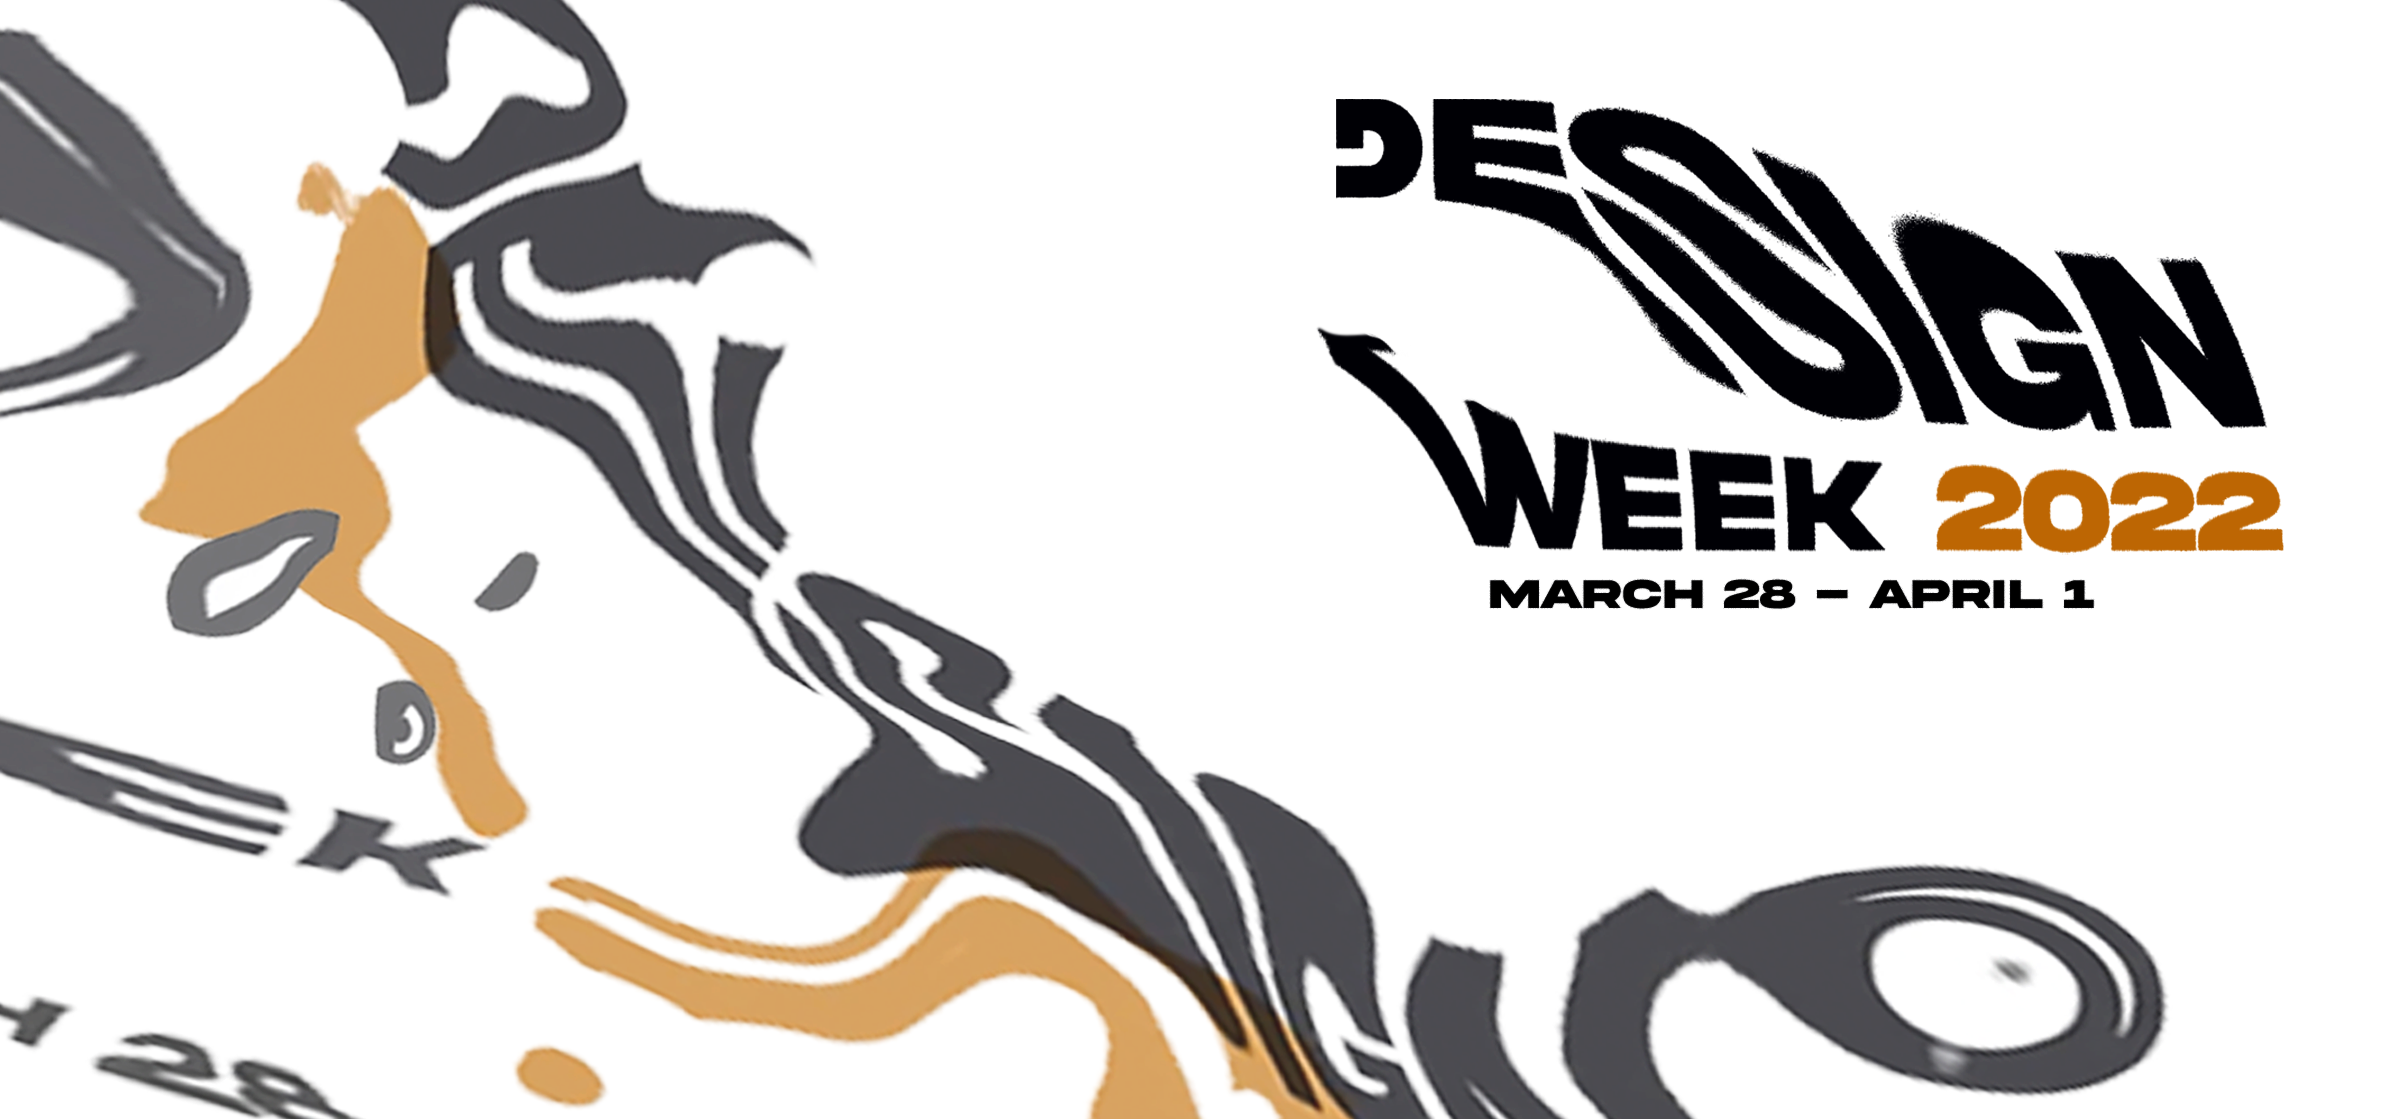 Design Week 2022 logo